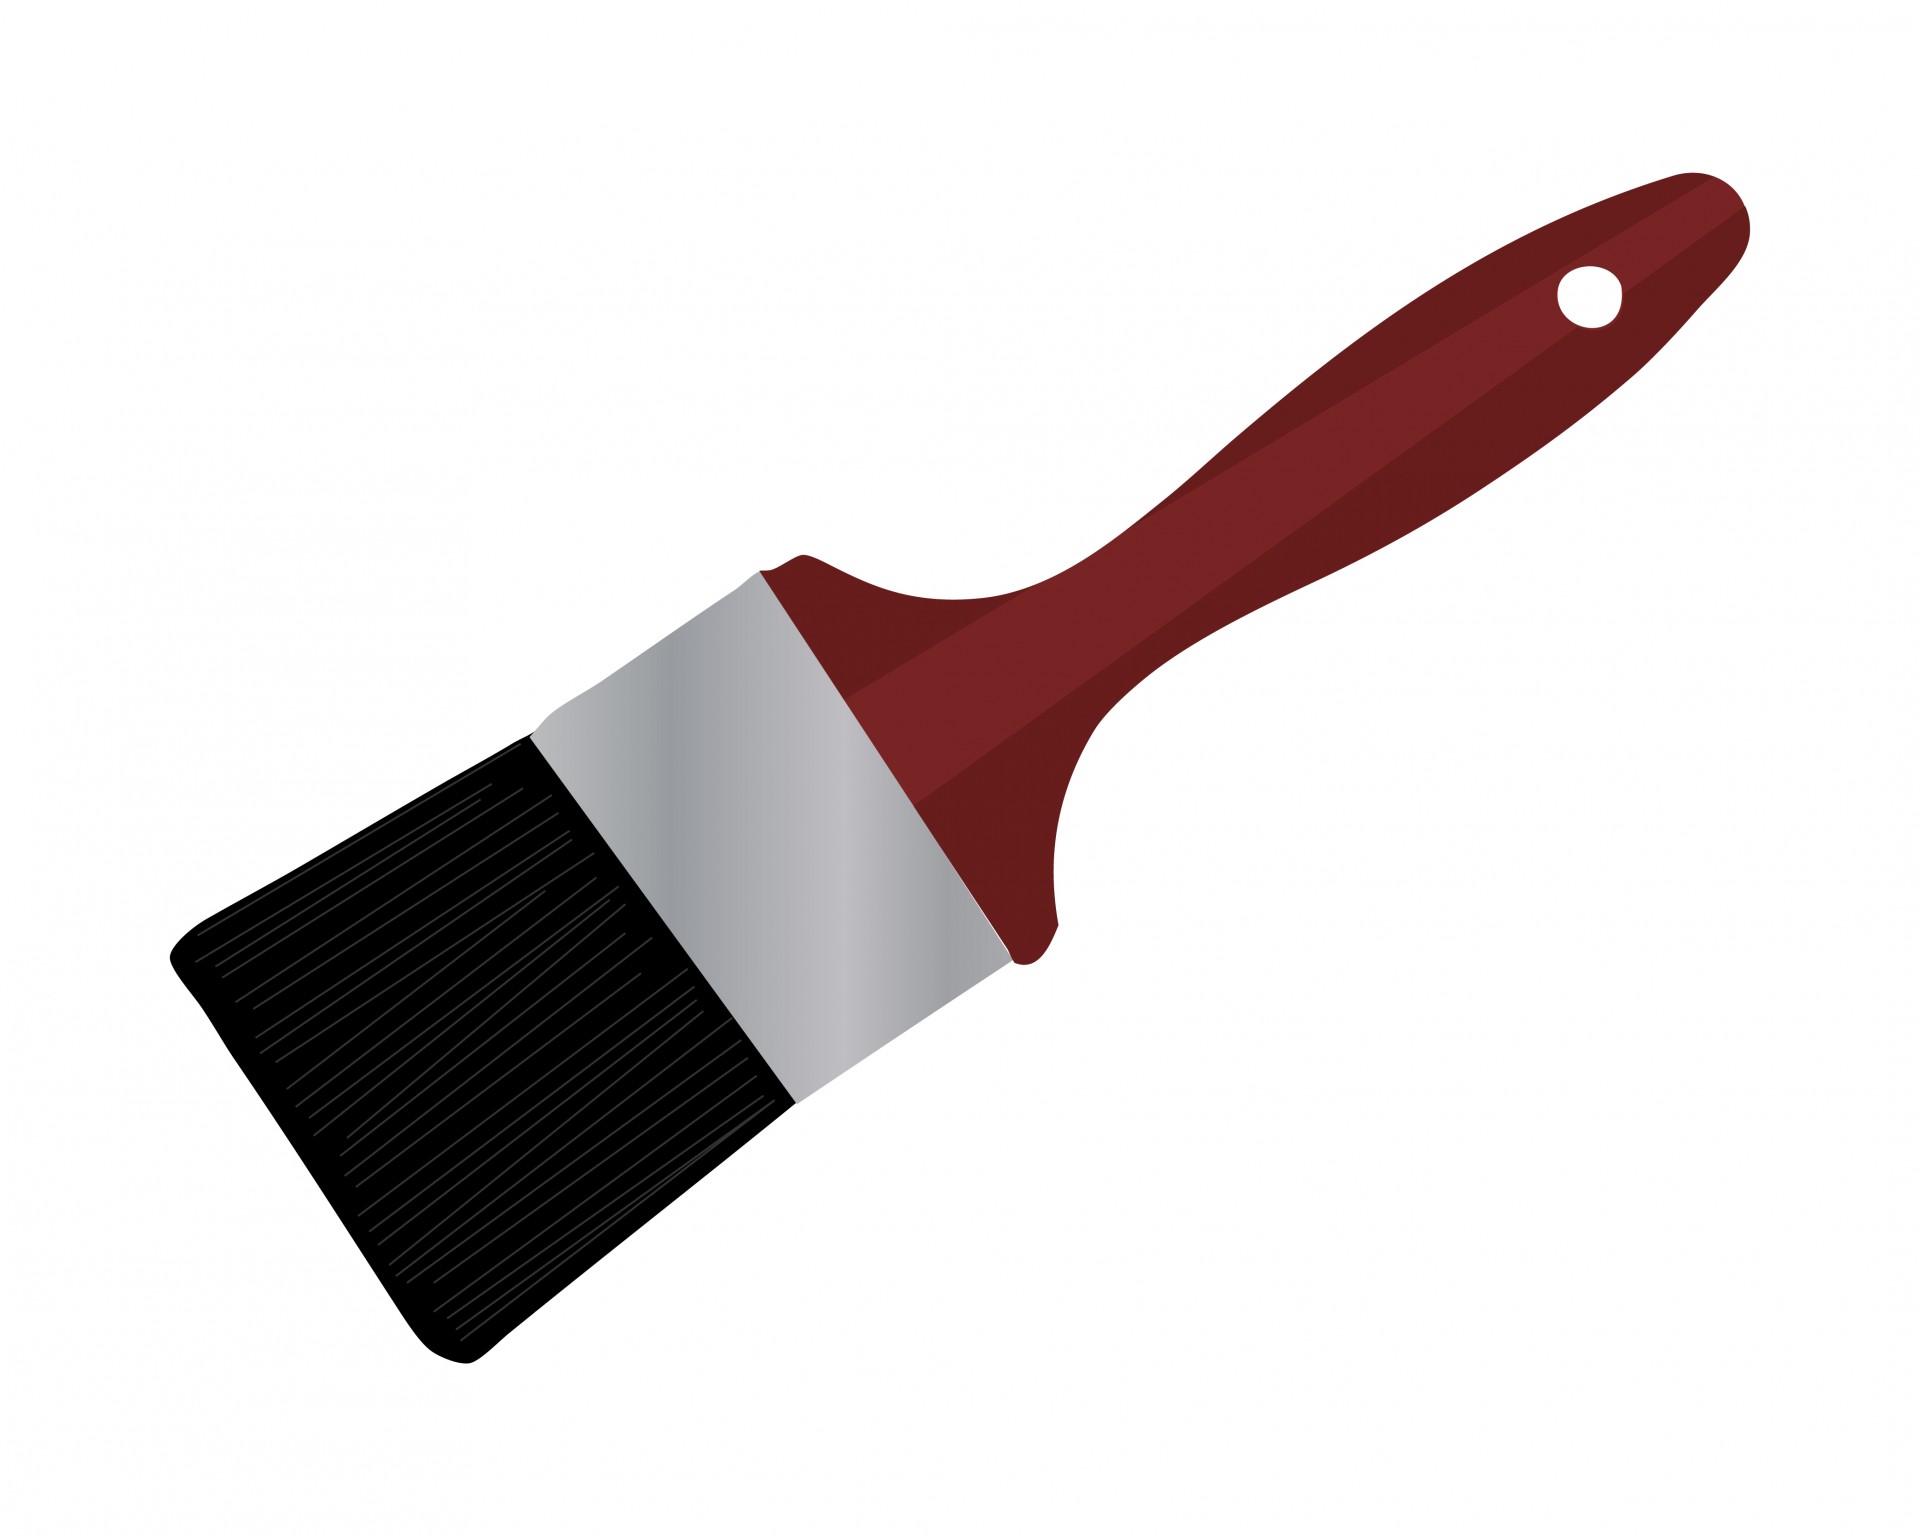 Paintbrush clipart 2